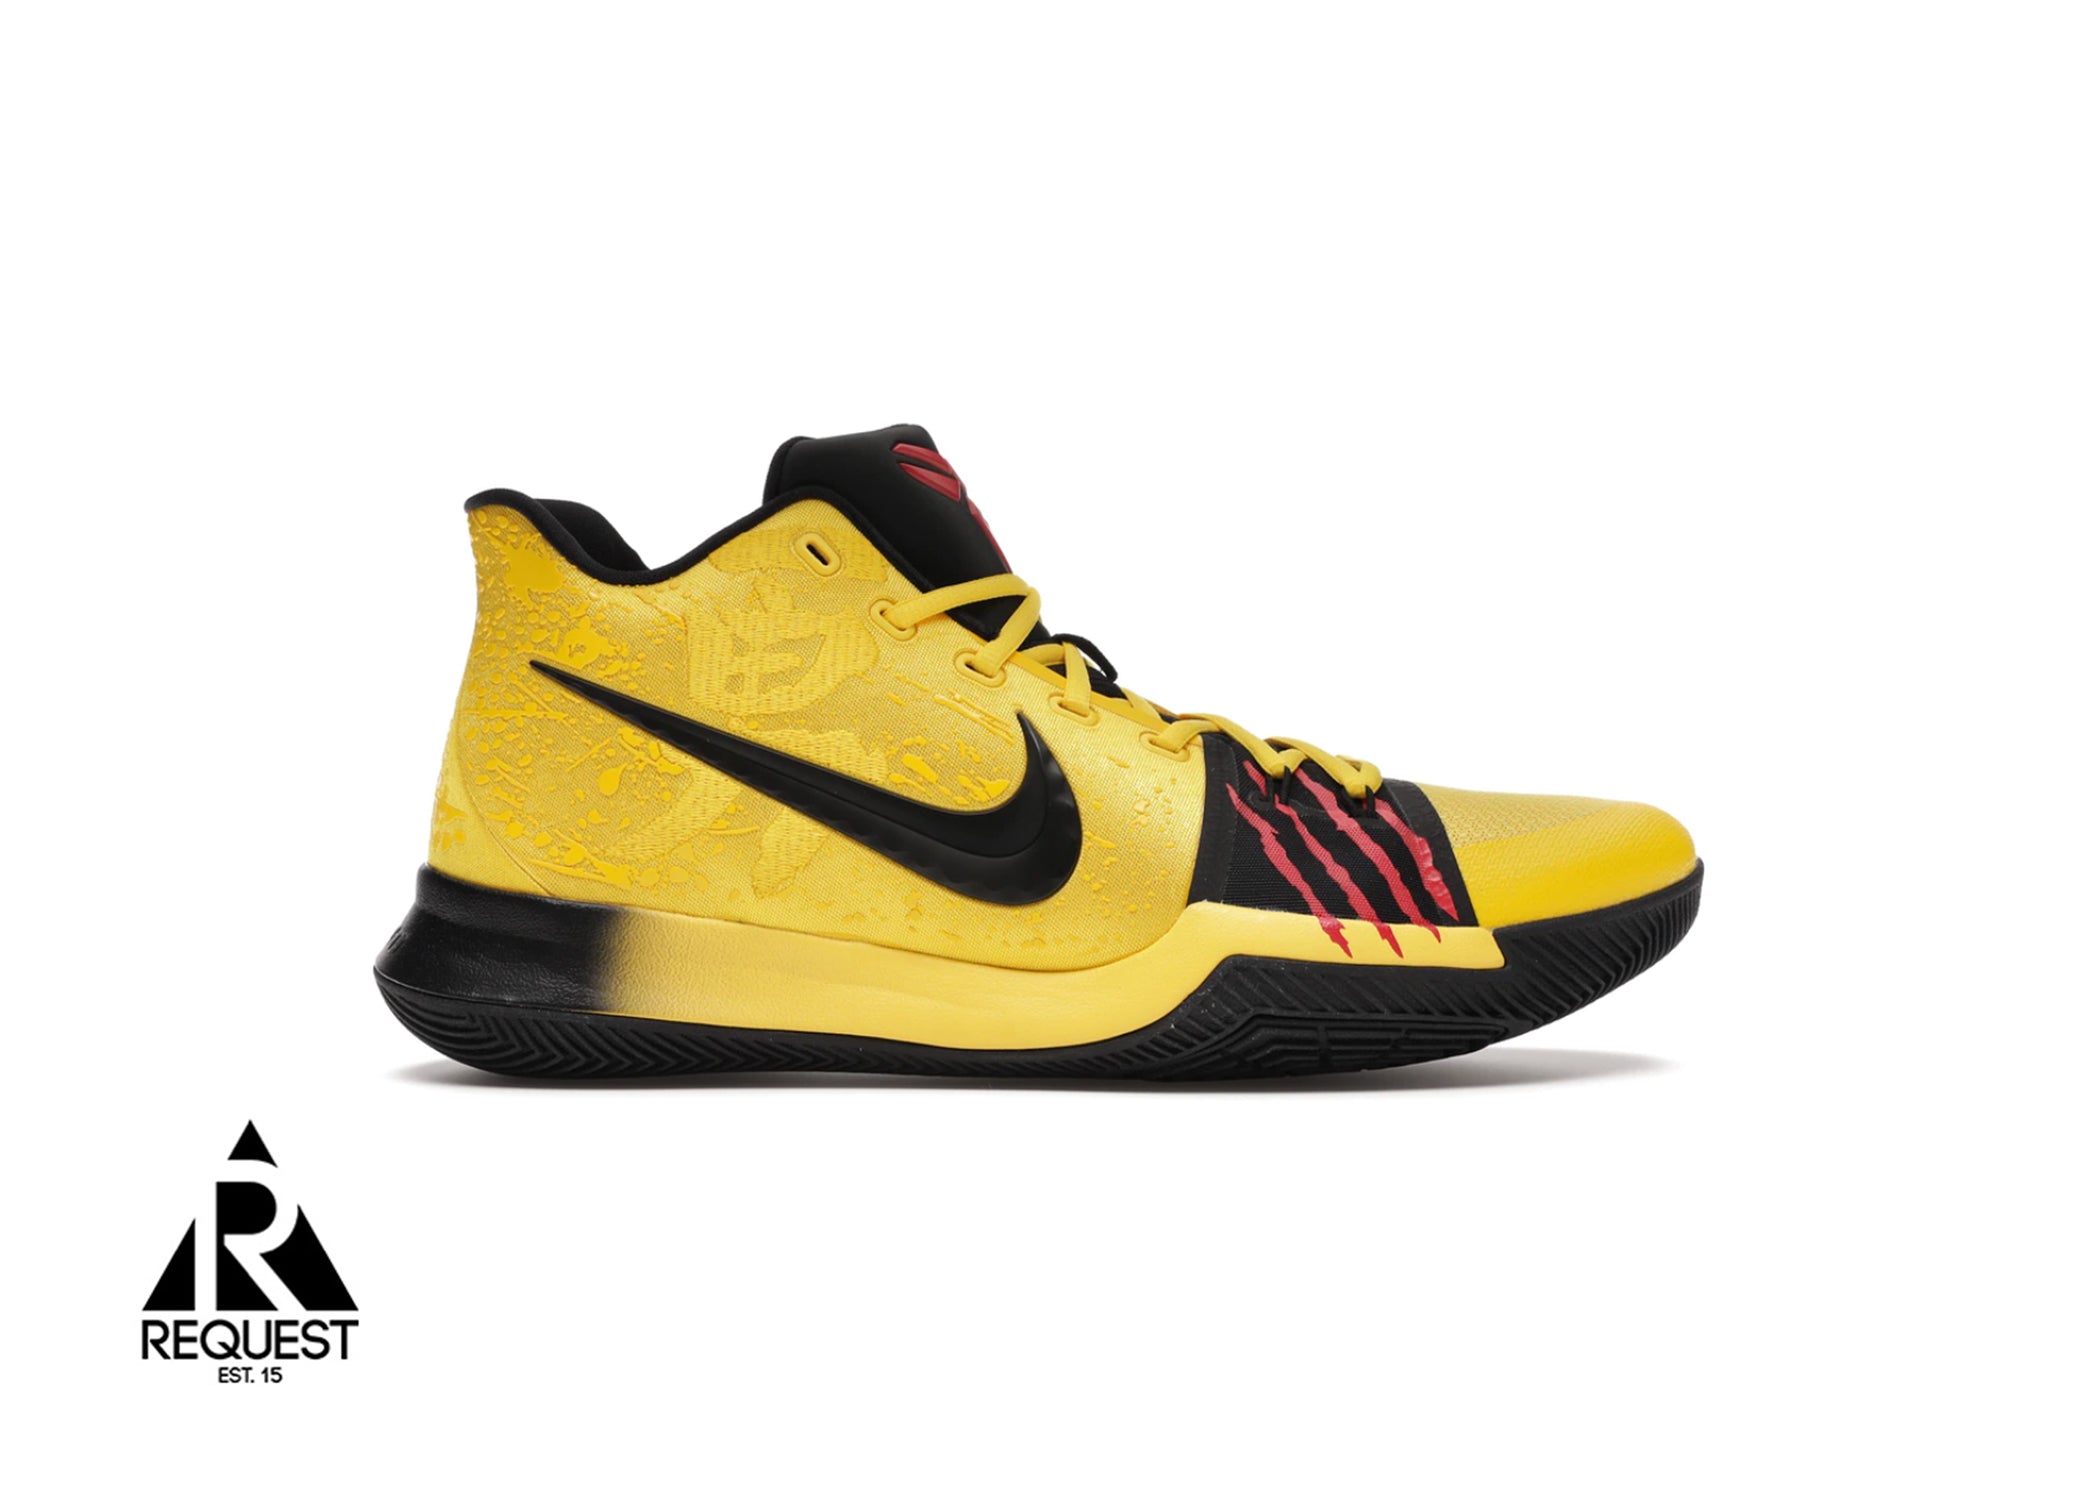 Nike Kyrie 3 “Bruce Lee”